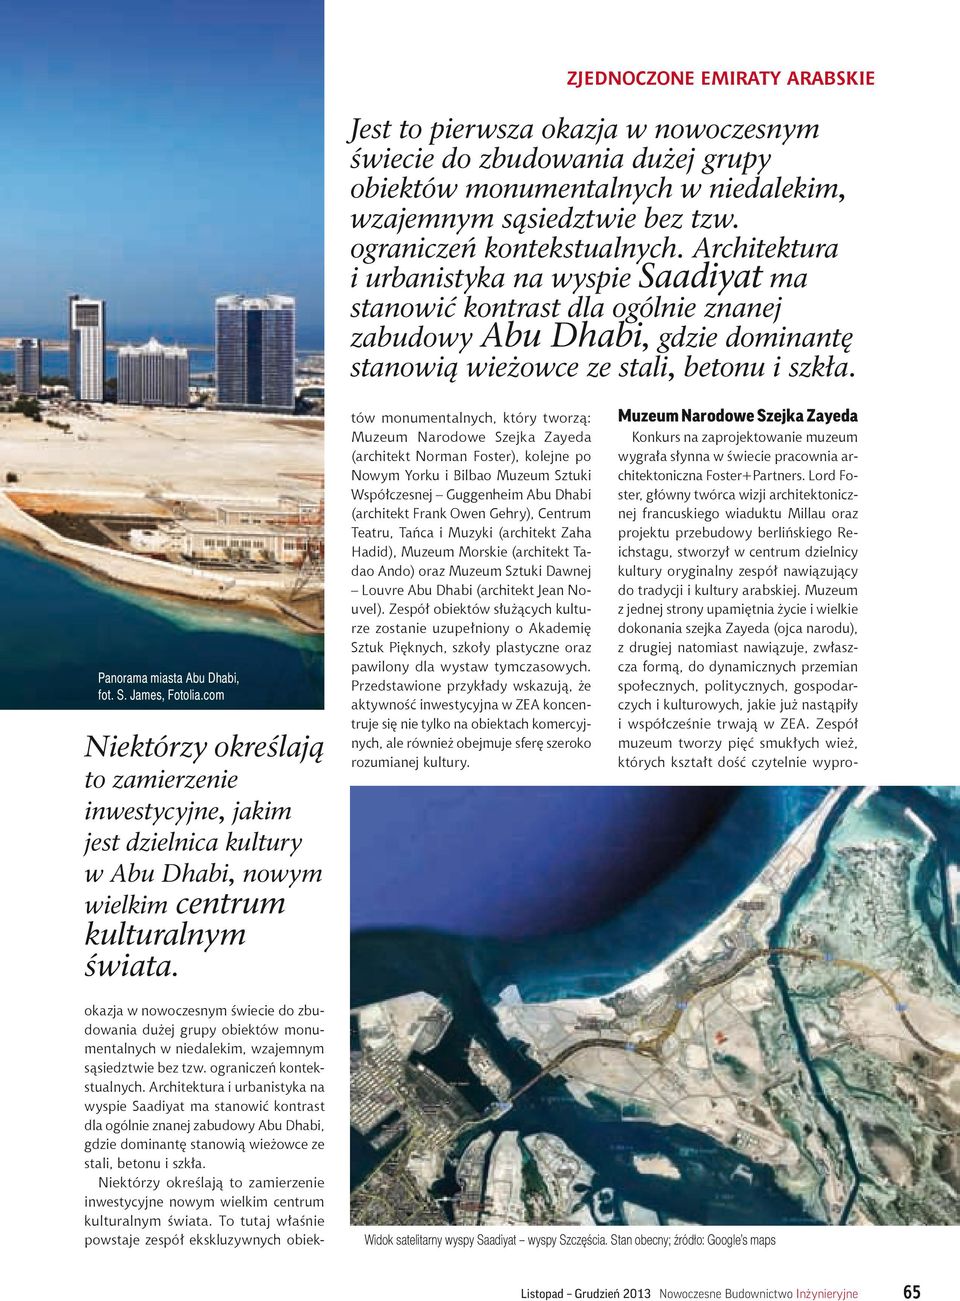 com Niektórzy określają to zamierzenie inwestycyjne, jakim jest dzielnica kultury w Abu Dhabi, nowym wielkim centrum kulturalnym świata.